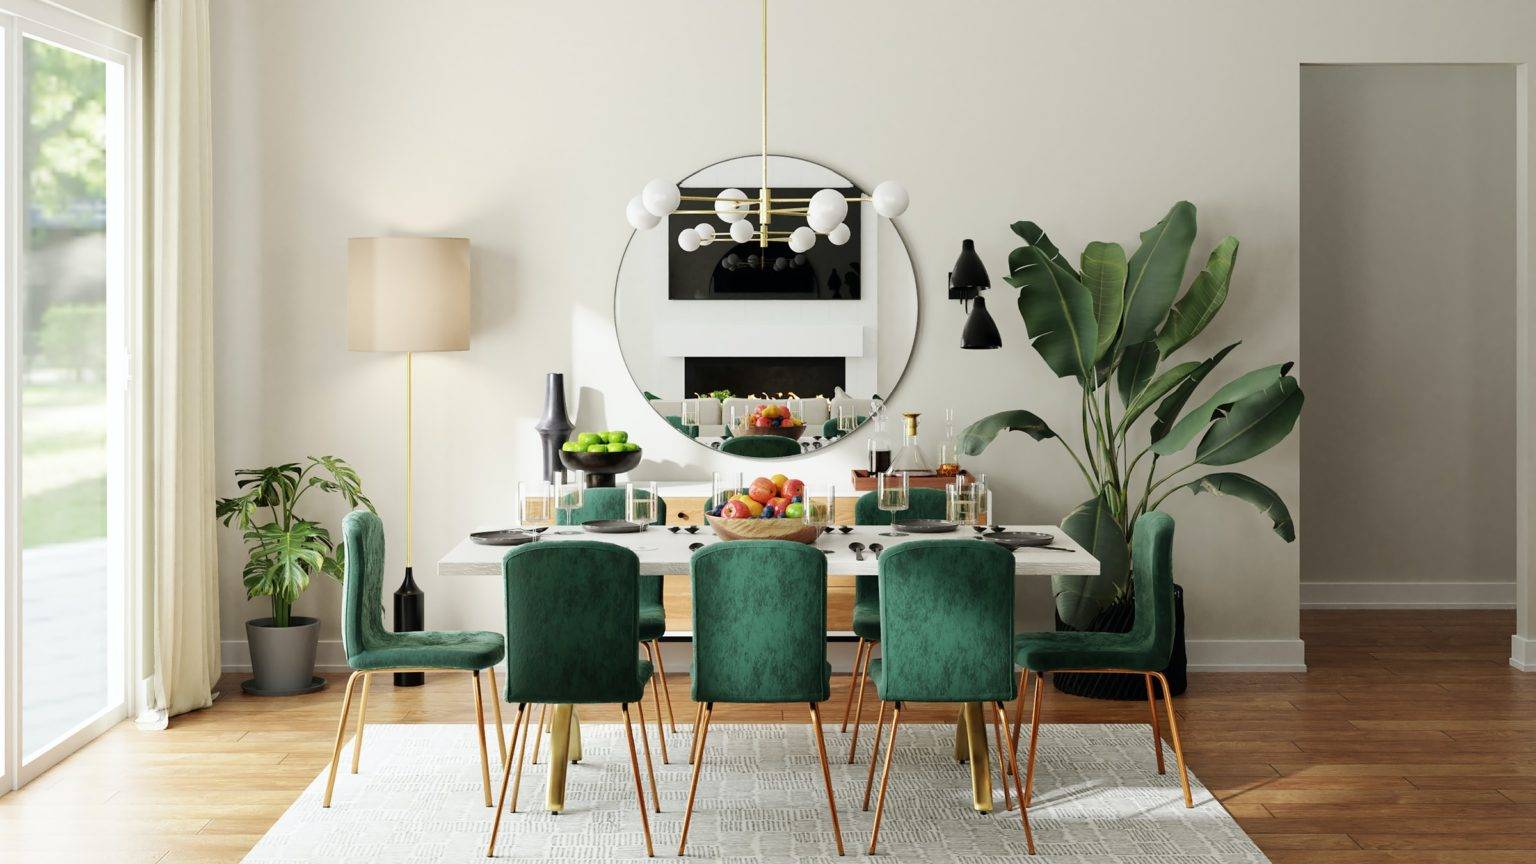 Phòng ăn phong cách tối giản với những điểm nhấn màu xanh lá tràn đầy năng lượng.